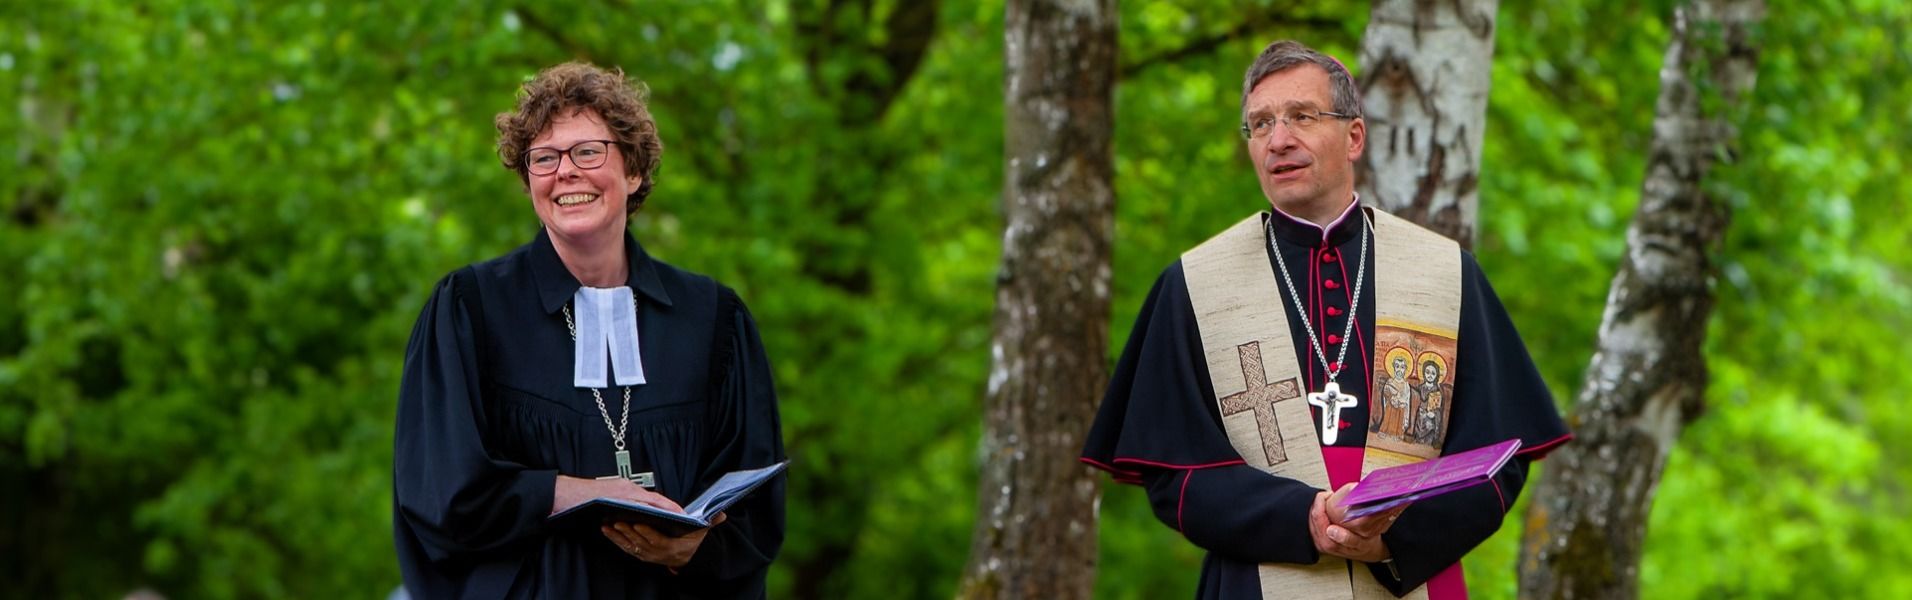 Bischöfin Hofmann und Bischof Gerber predigen am 26. Mai auf der Bühne am Fritzlarer Dom. Foto: Bistum Fulda / Burkhard Beintken